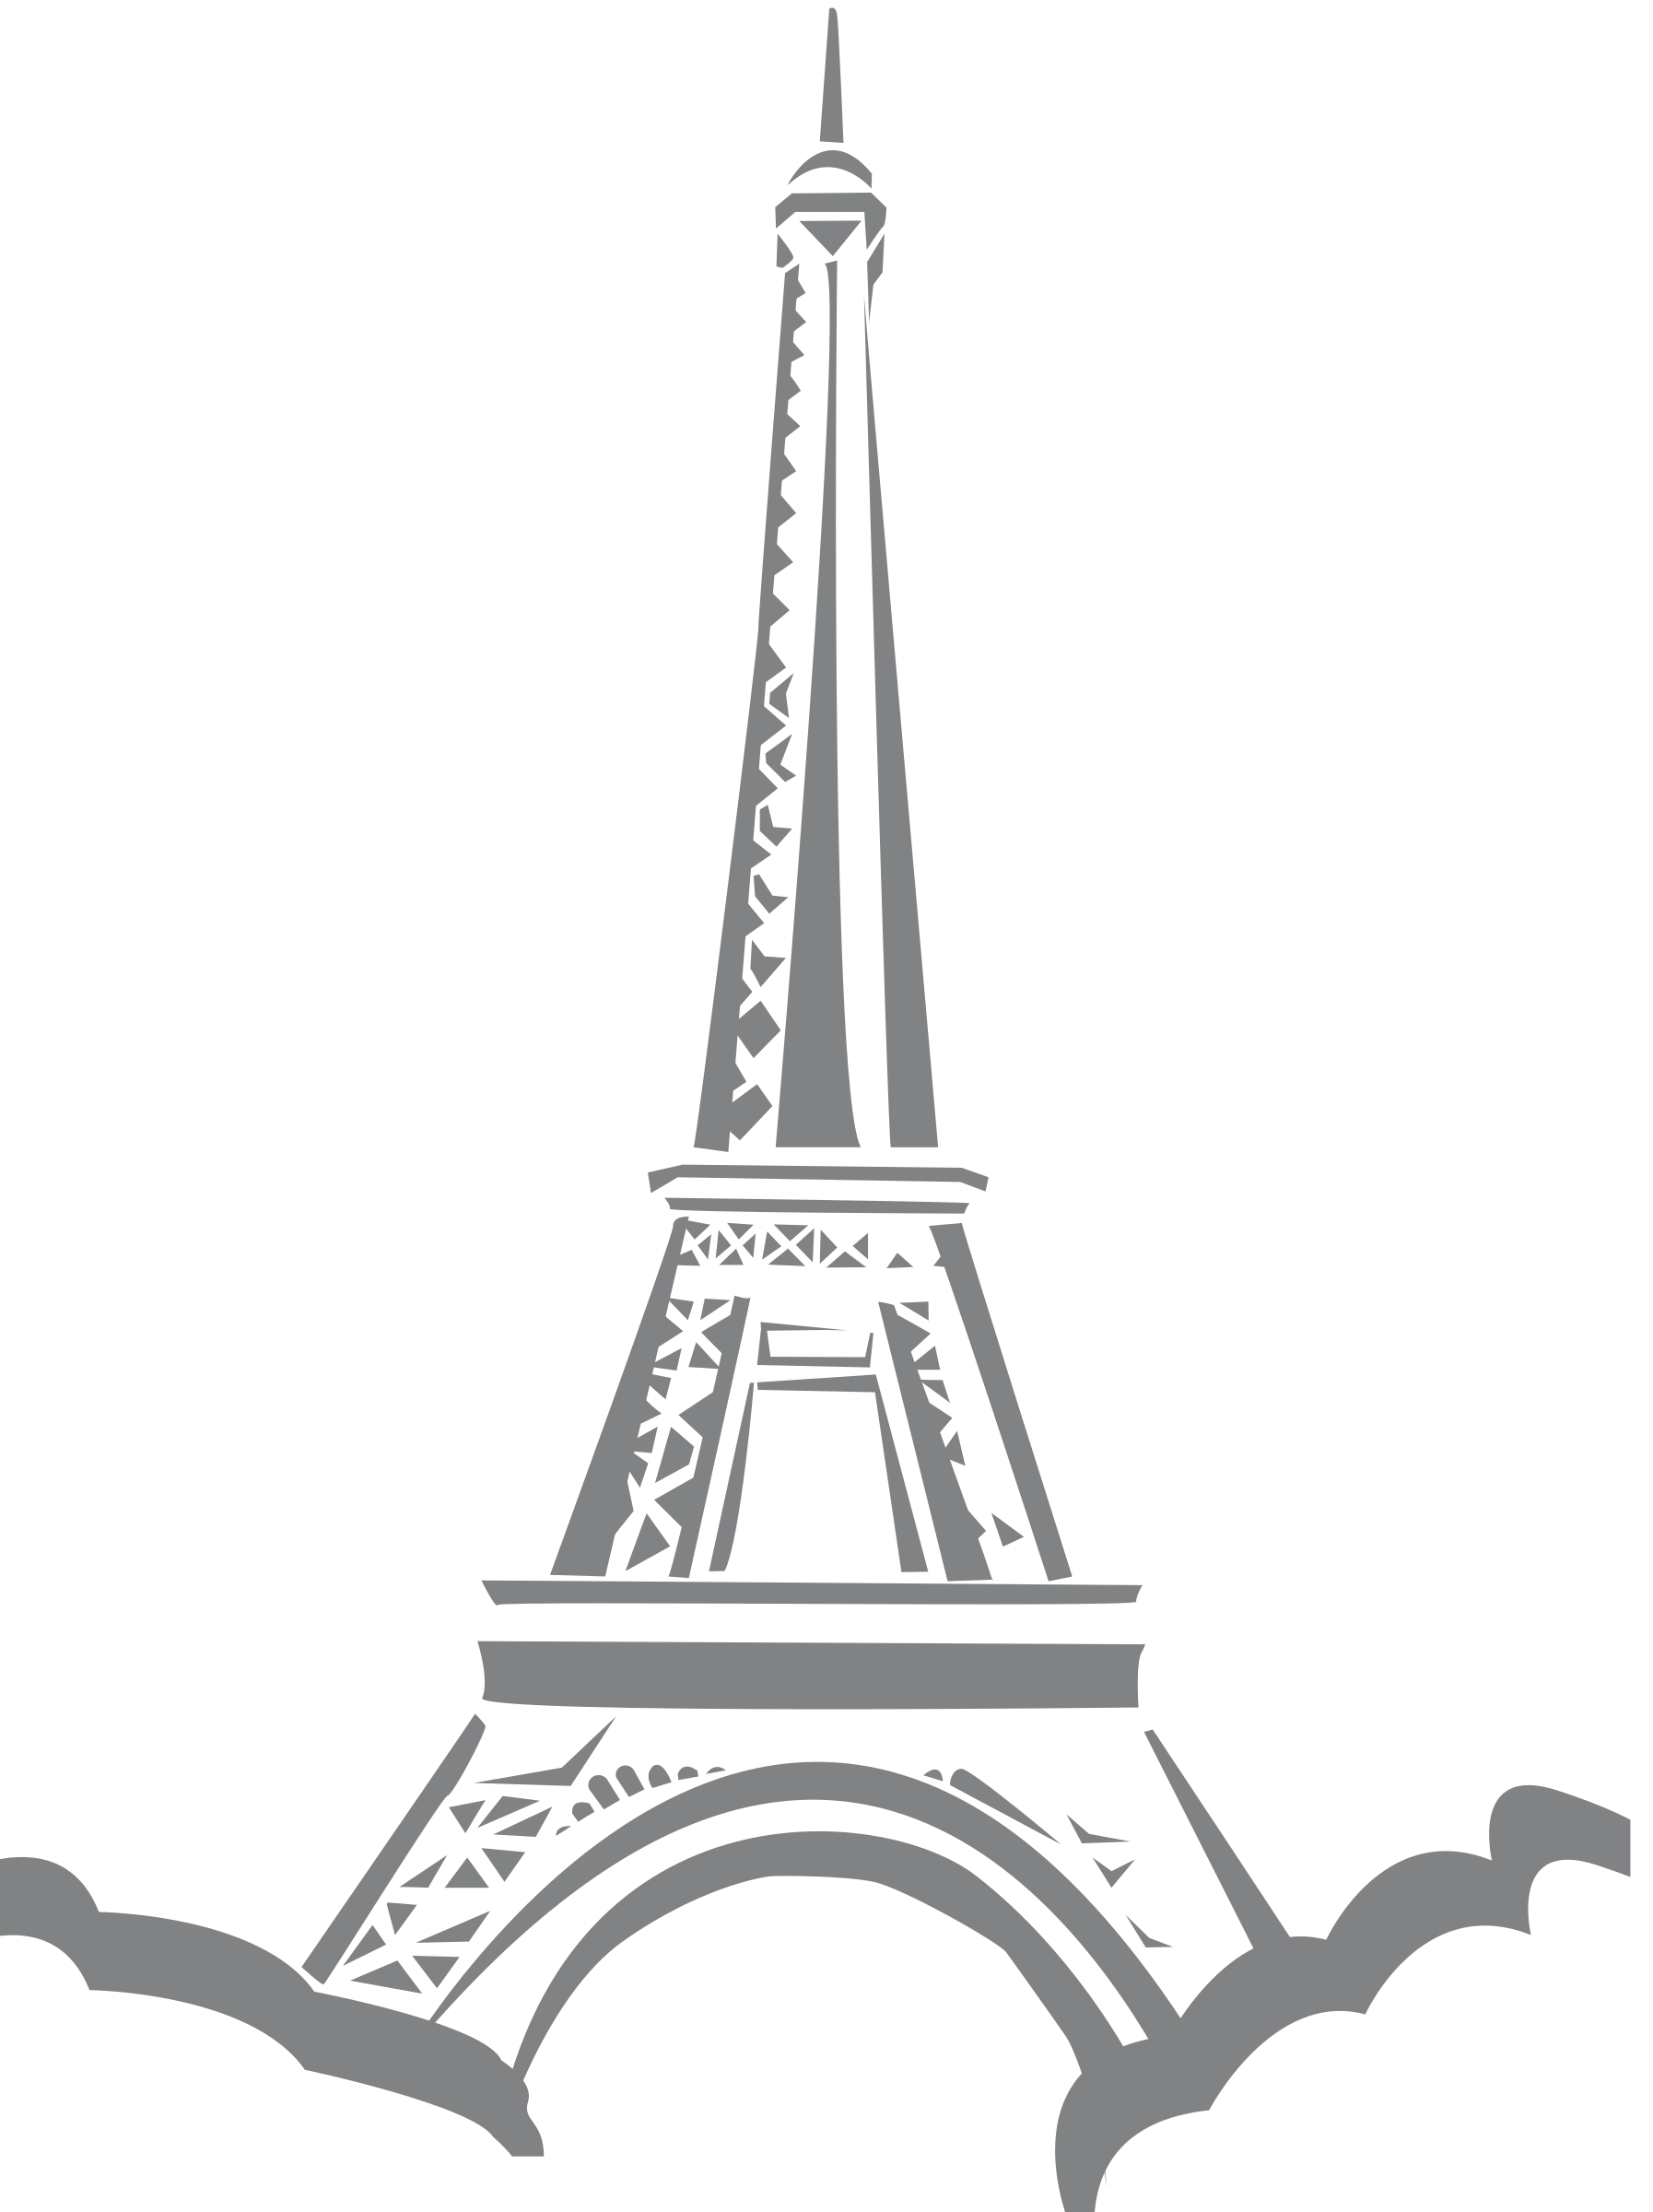 Paris clipart svg. Eiffle tower big image